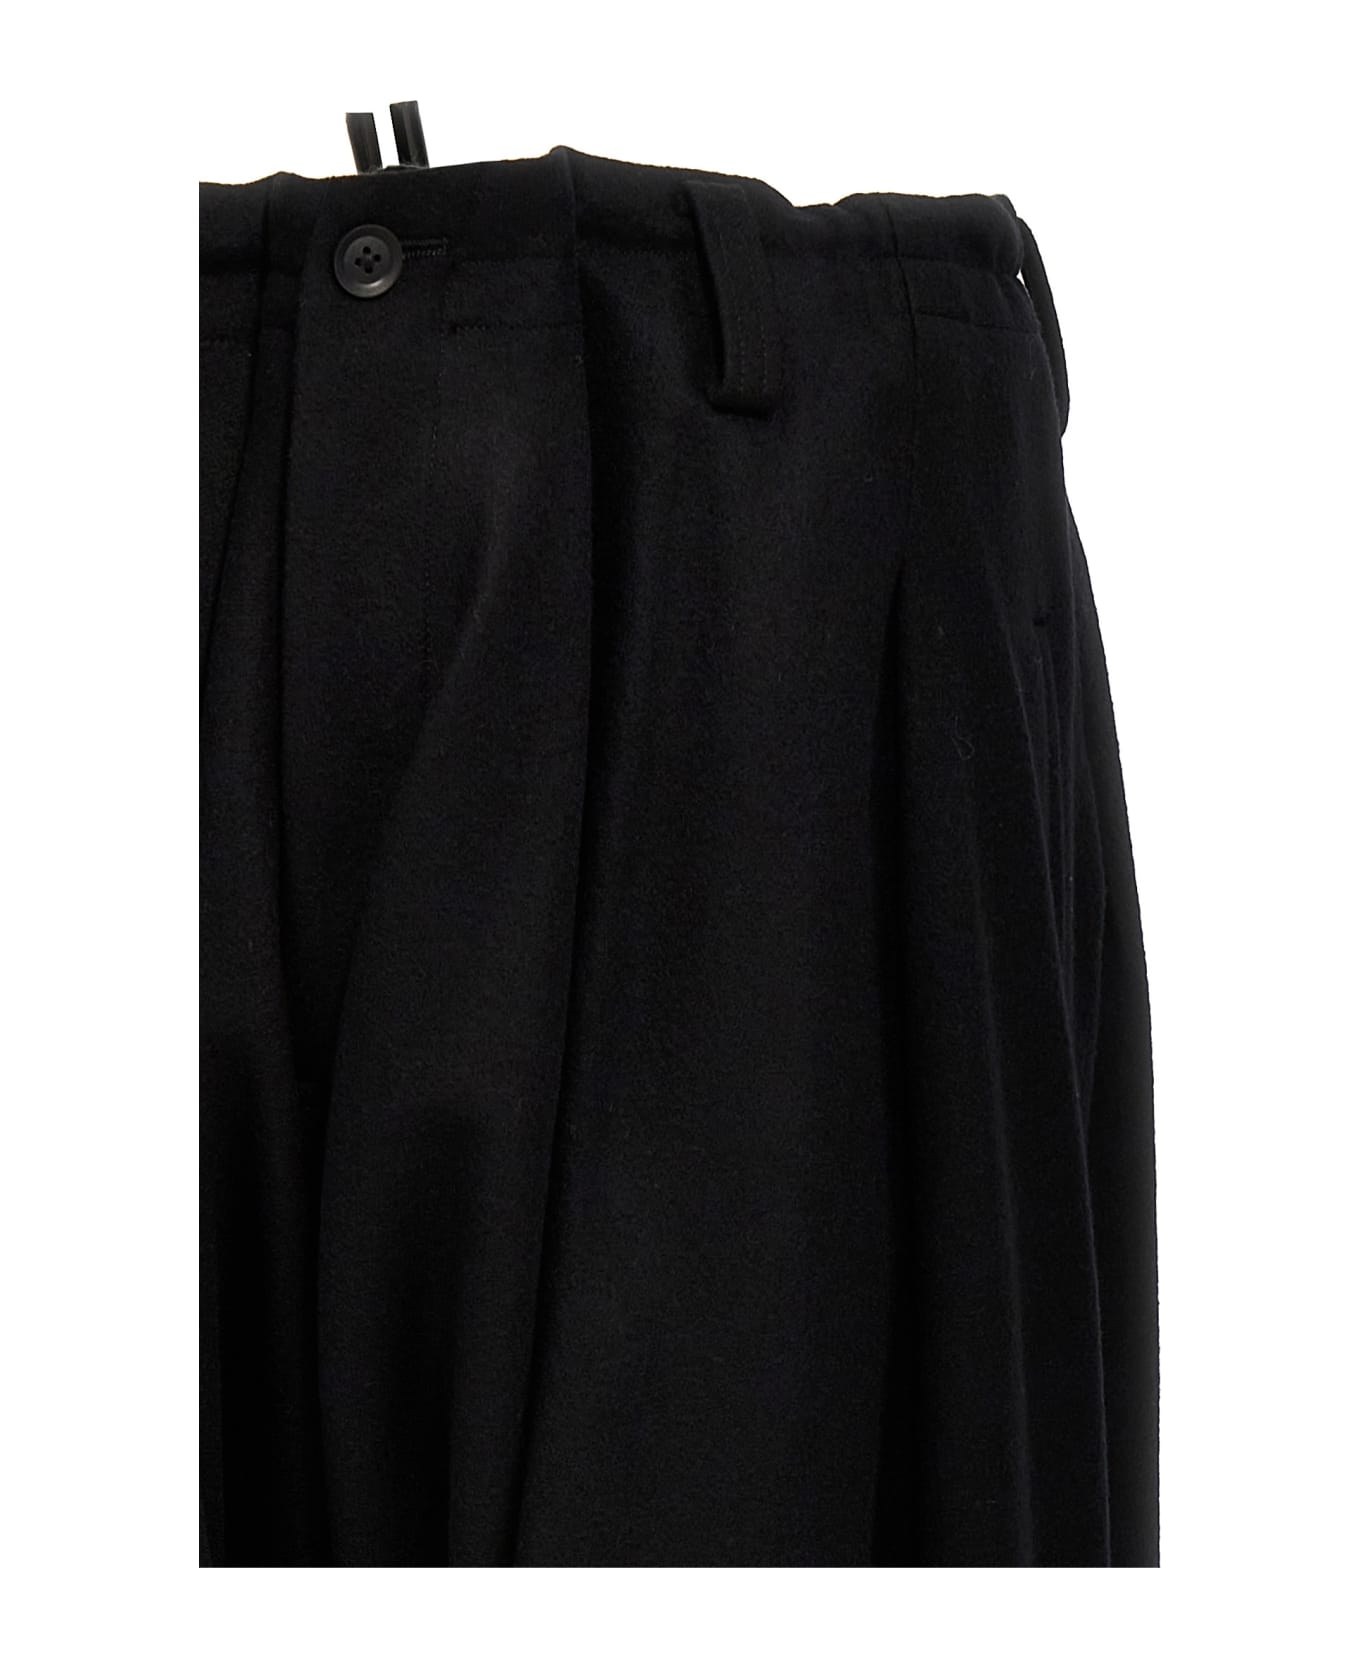 Yohji Yamamoto Low Crotch Pants - Black  